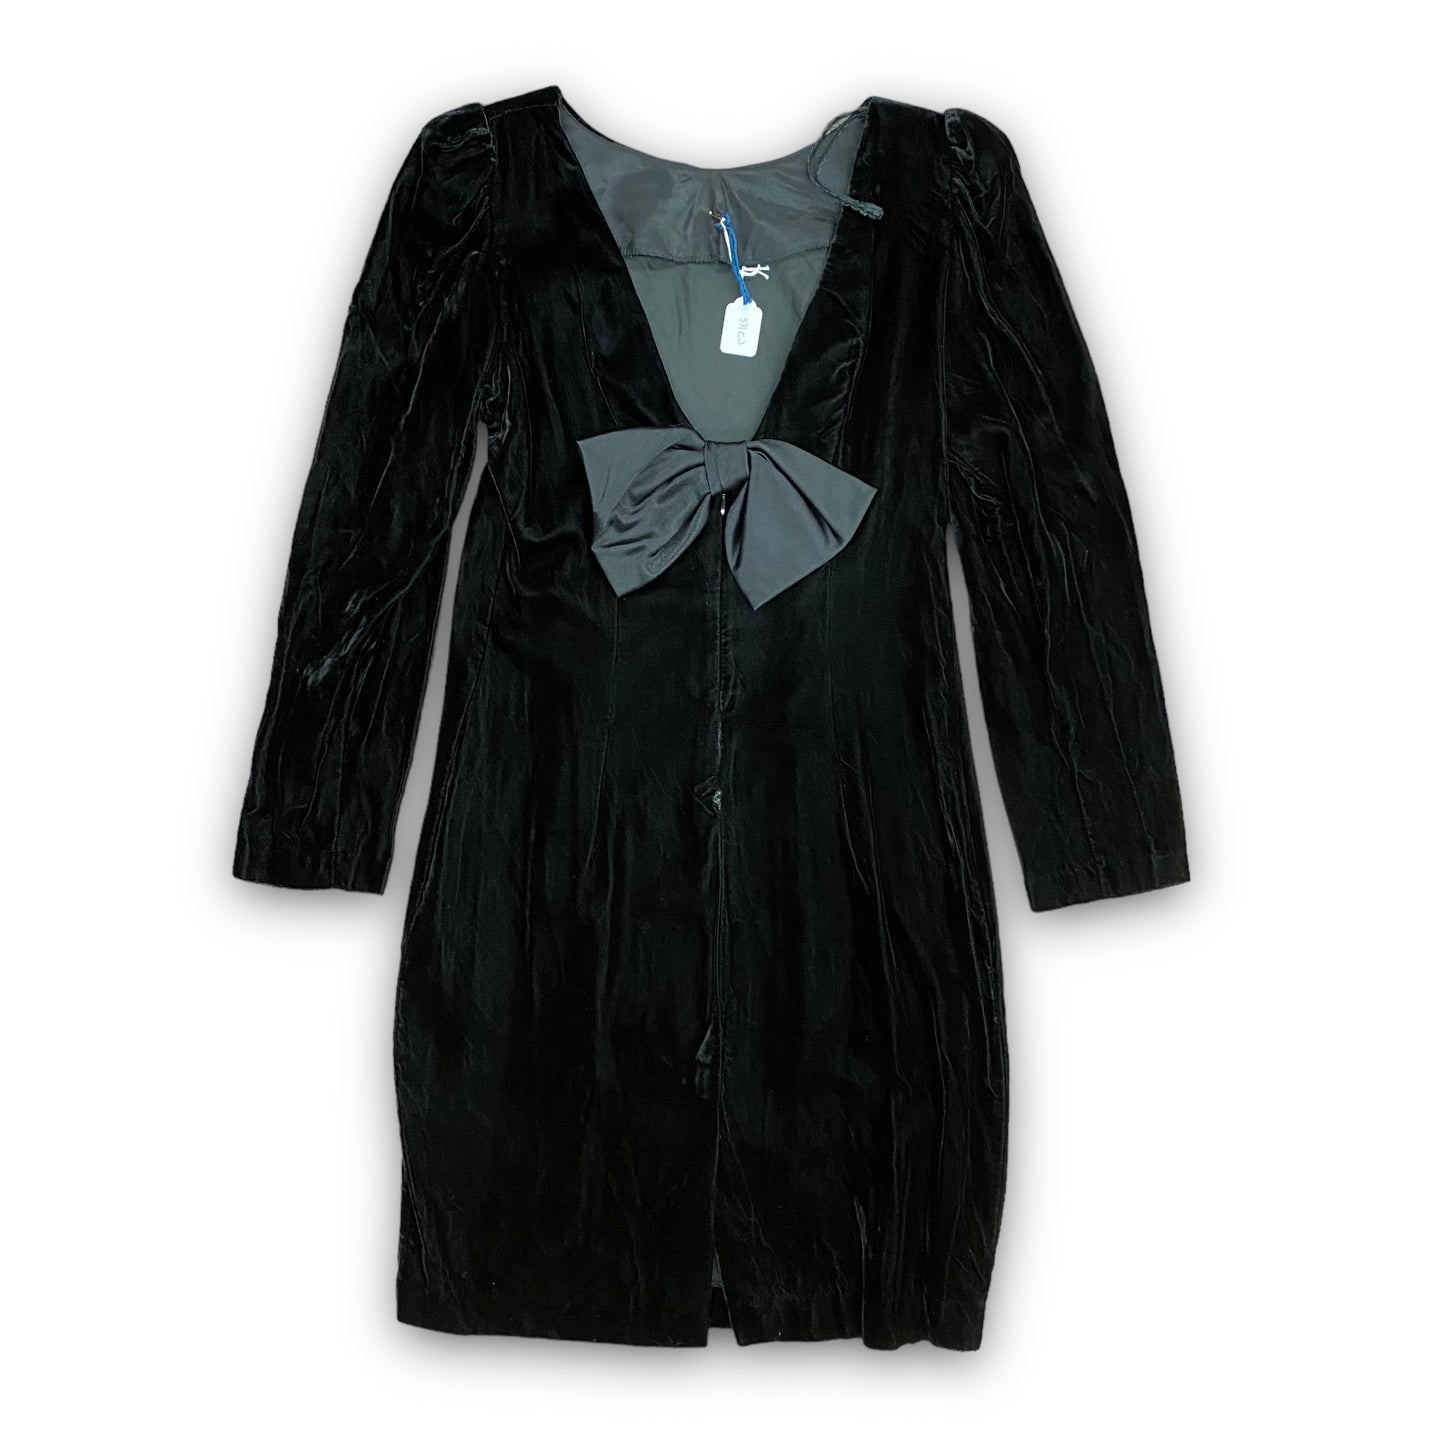 1980s Black Velvet Plunge Dress - Size 12